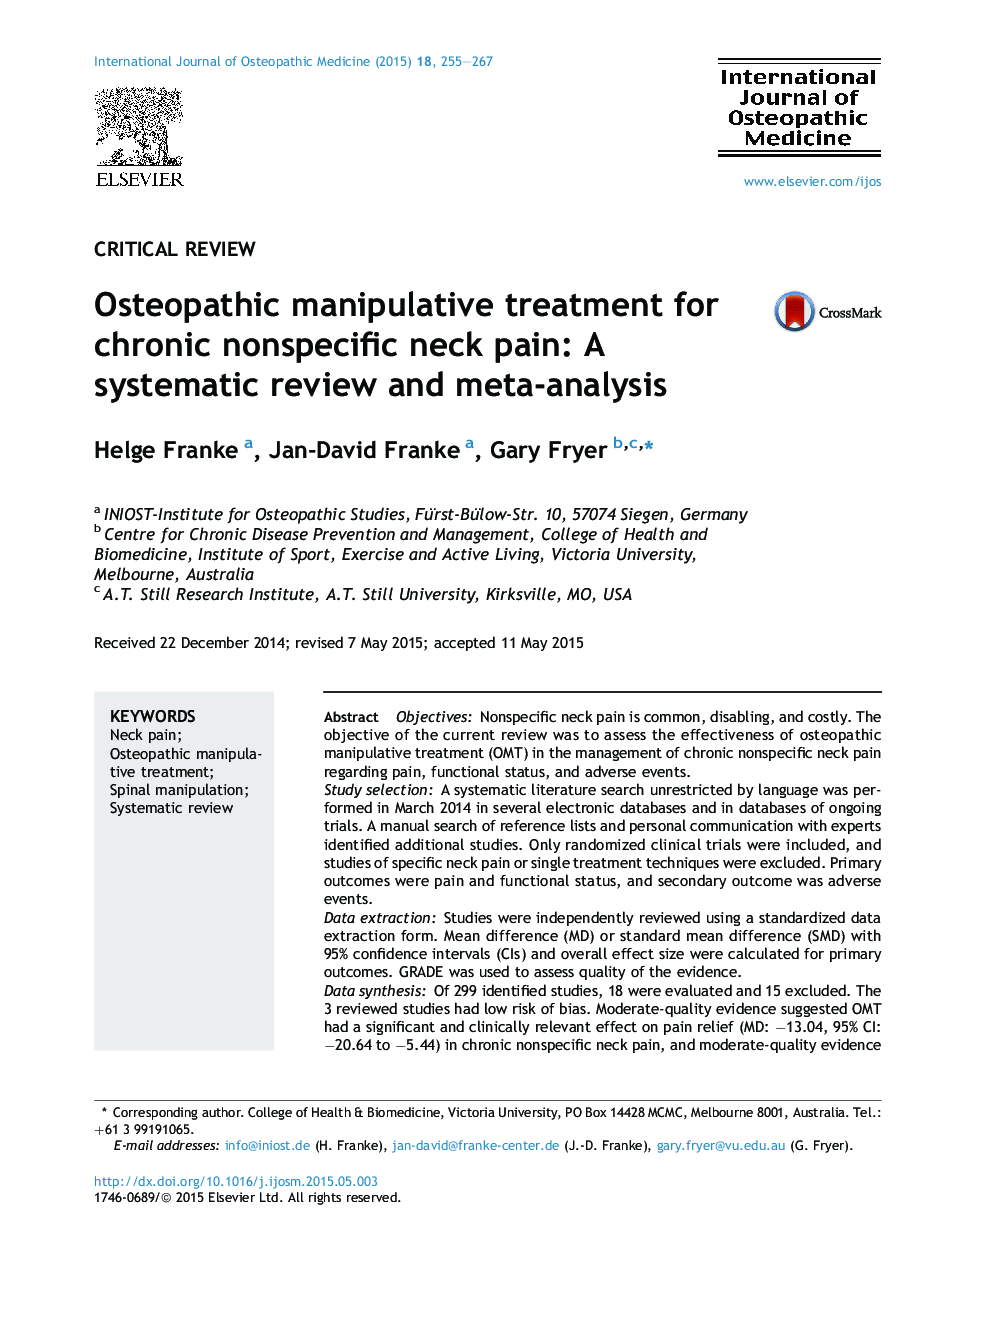 درمان دستکاری پوکی استخوان برای درد مزمن ناحیه گردن: بررسی منظم و متاآنالیز